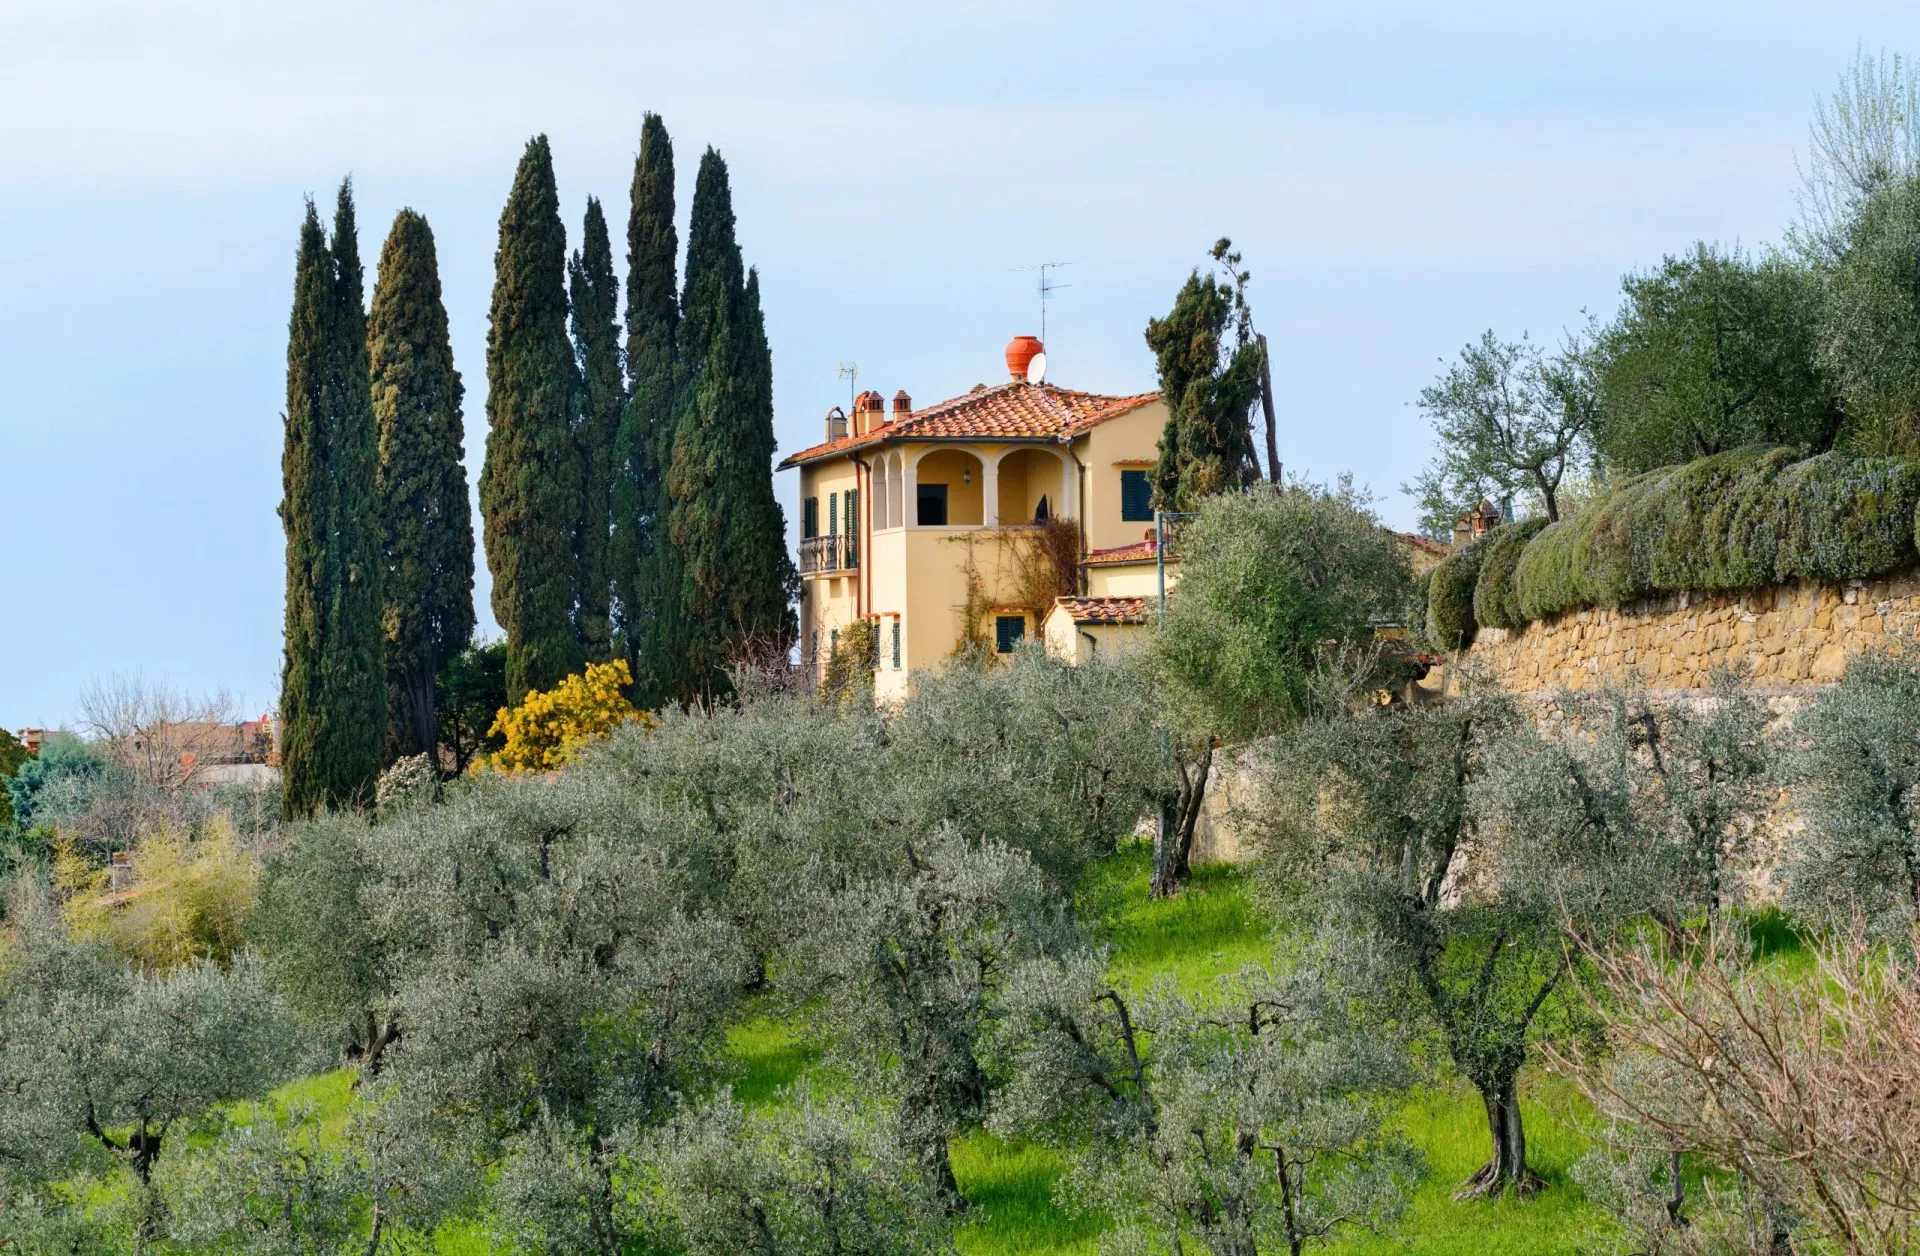 Settignano. Suburb of Florence. Olive orchards. Tuscany. Italy